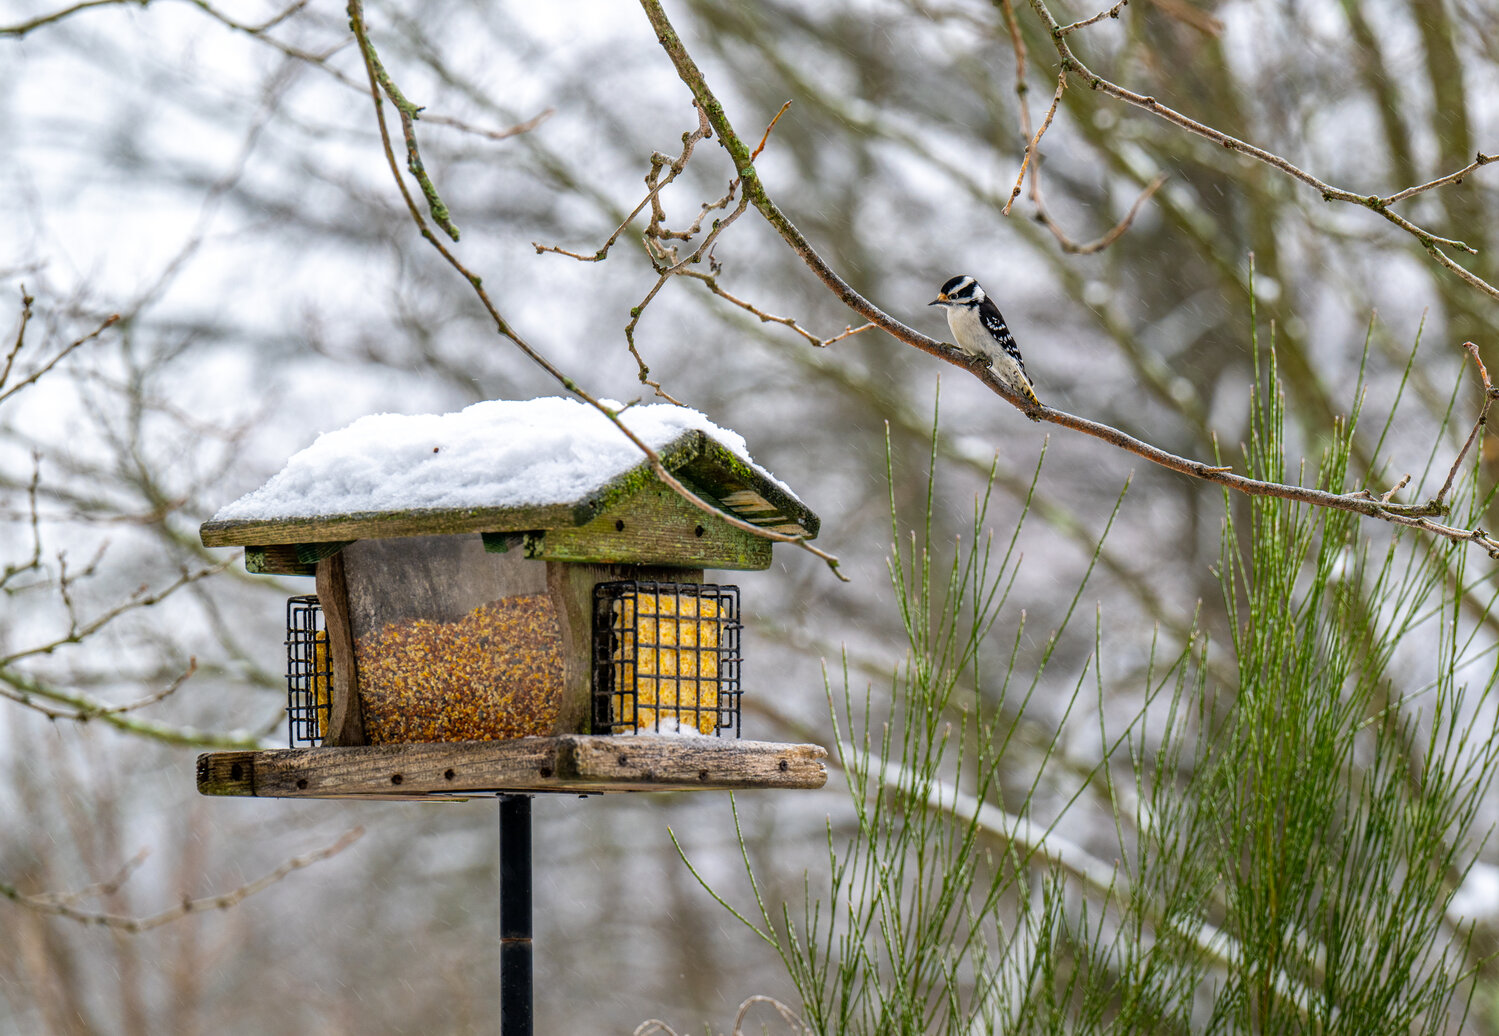 A woodpecker perches above a bird feeder Tuesday.